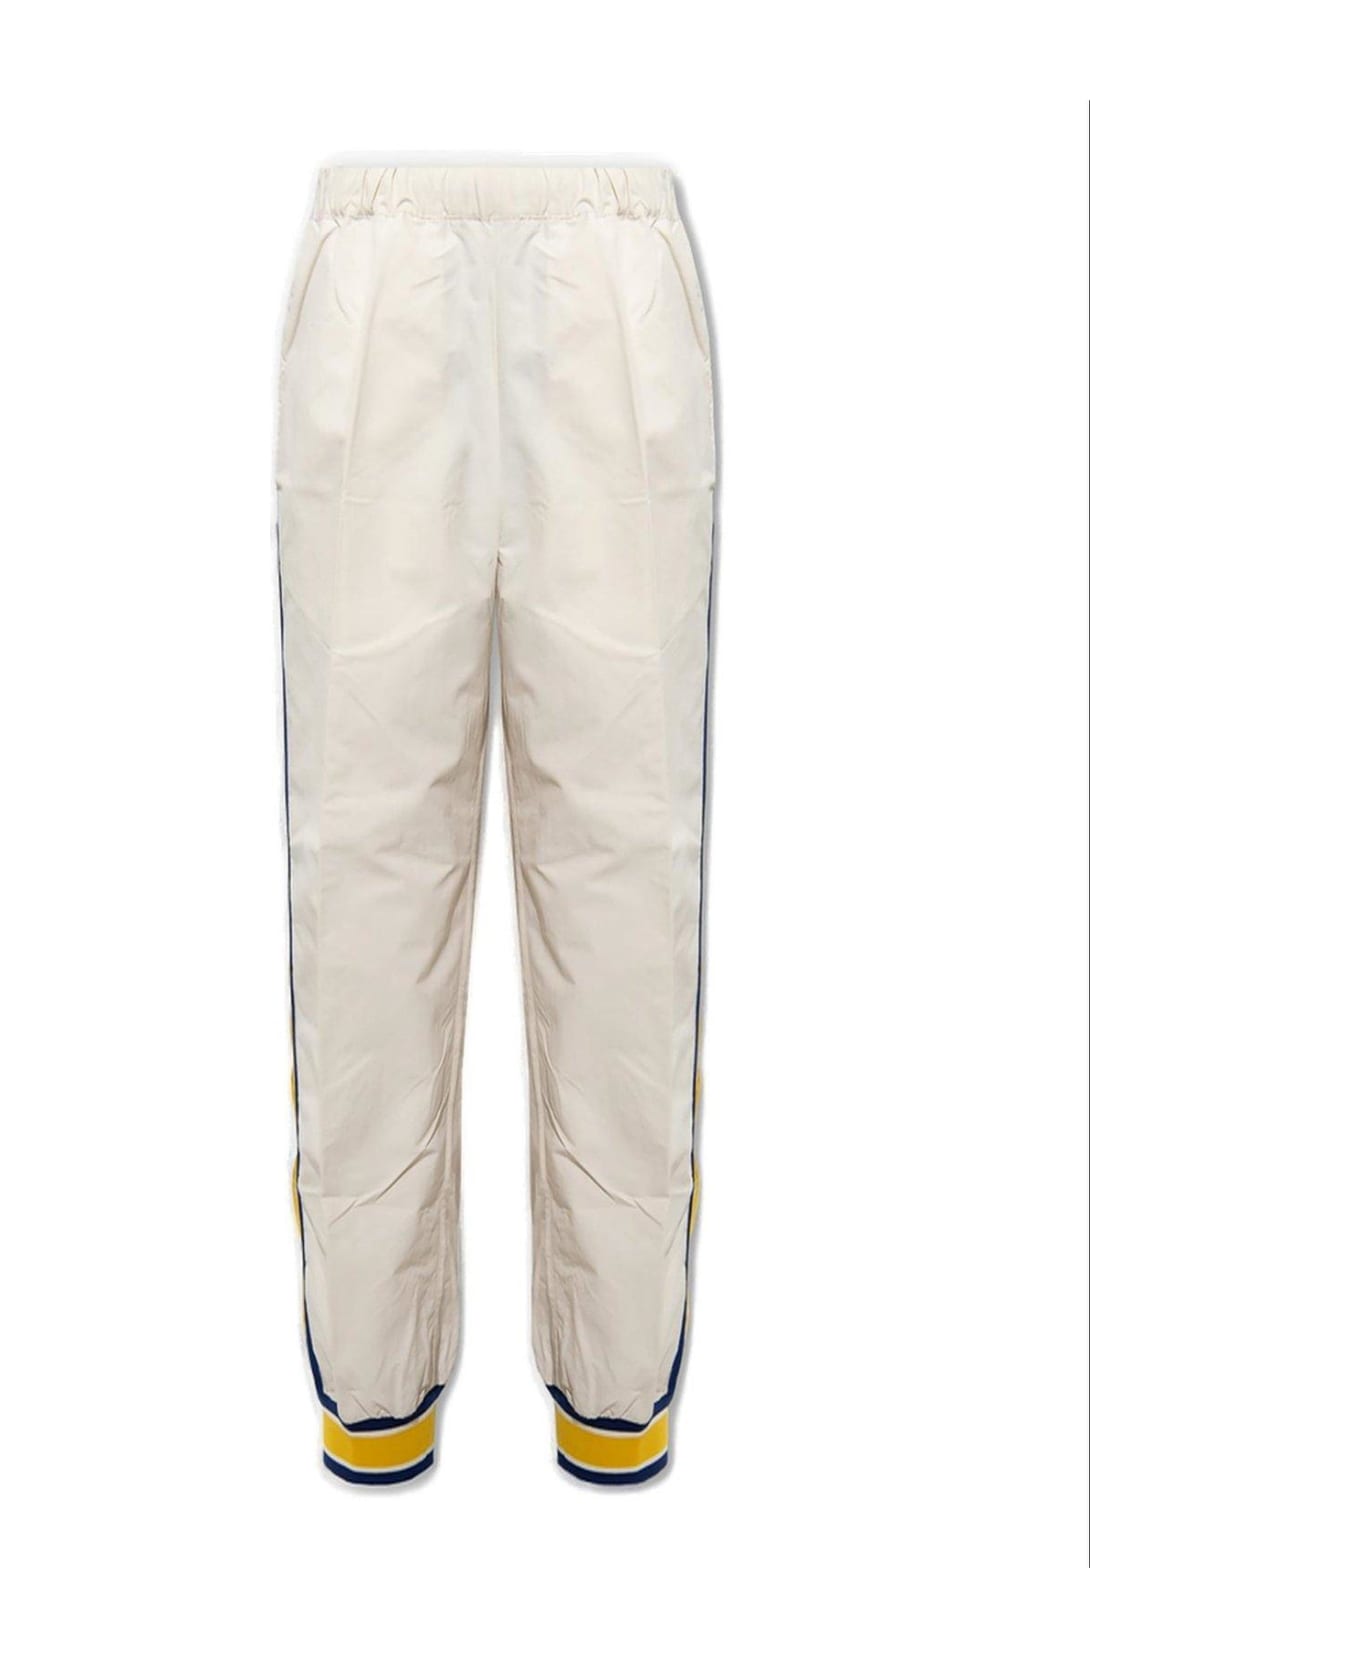 Gucci Side Stripes Detail Sweatpants - White